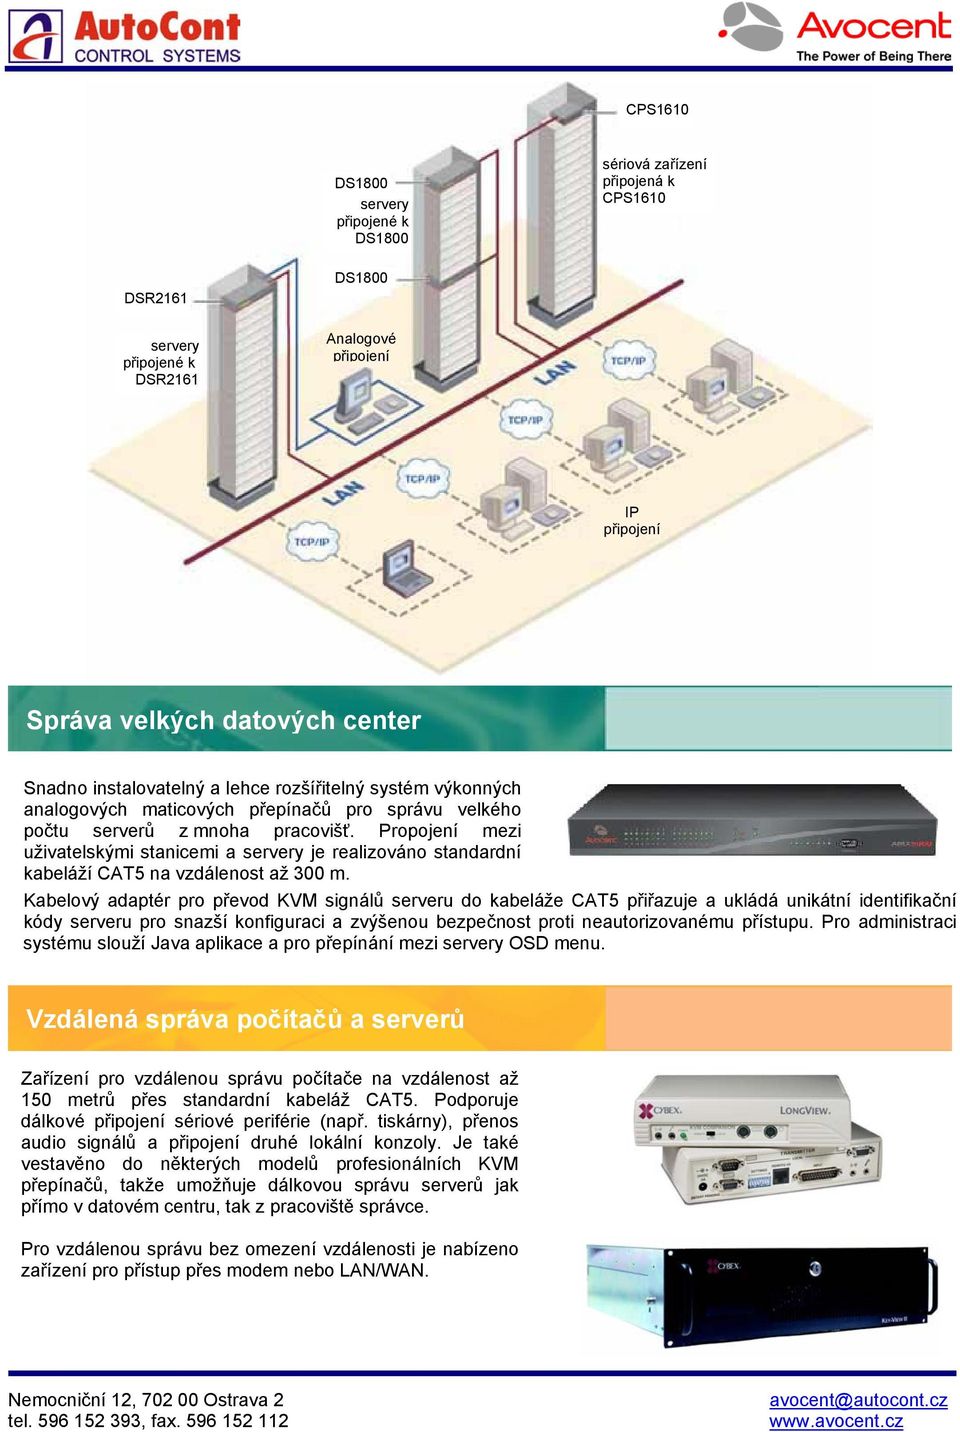 Propojení mezi uživatelskými stanicemi a servery je realizováno standardní kabeláží CAT5 na vzdálenost až 300 m.